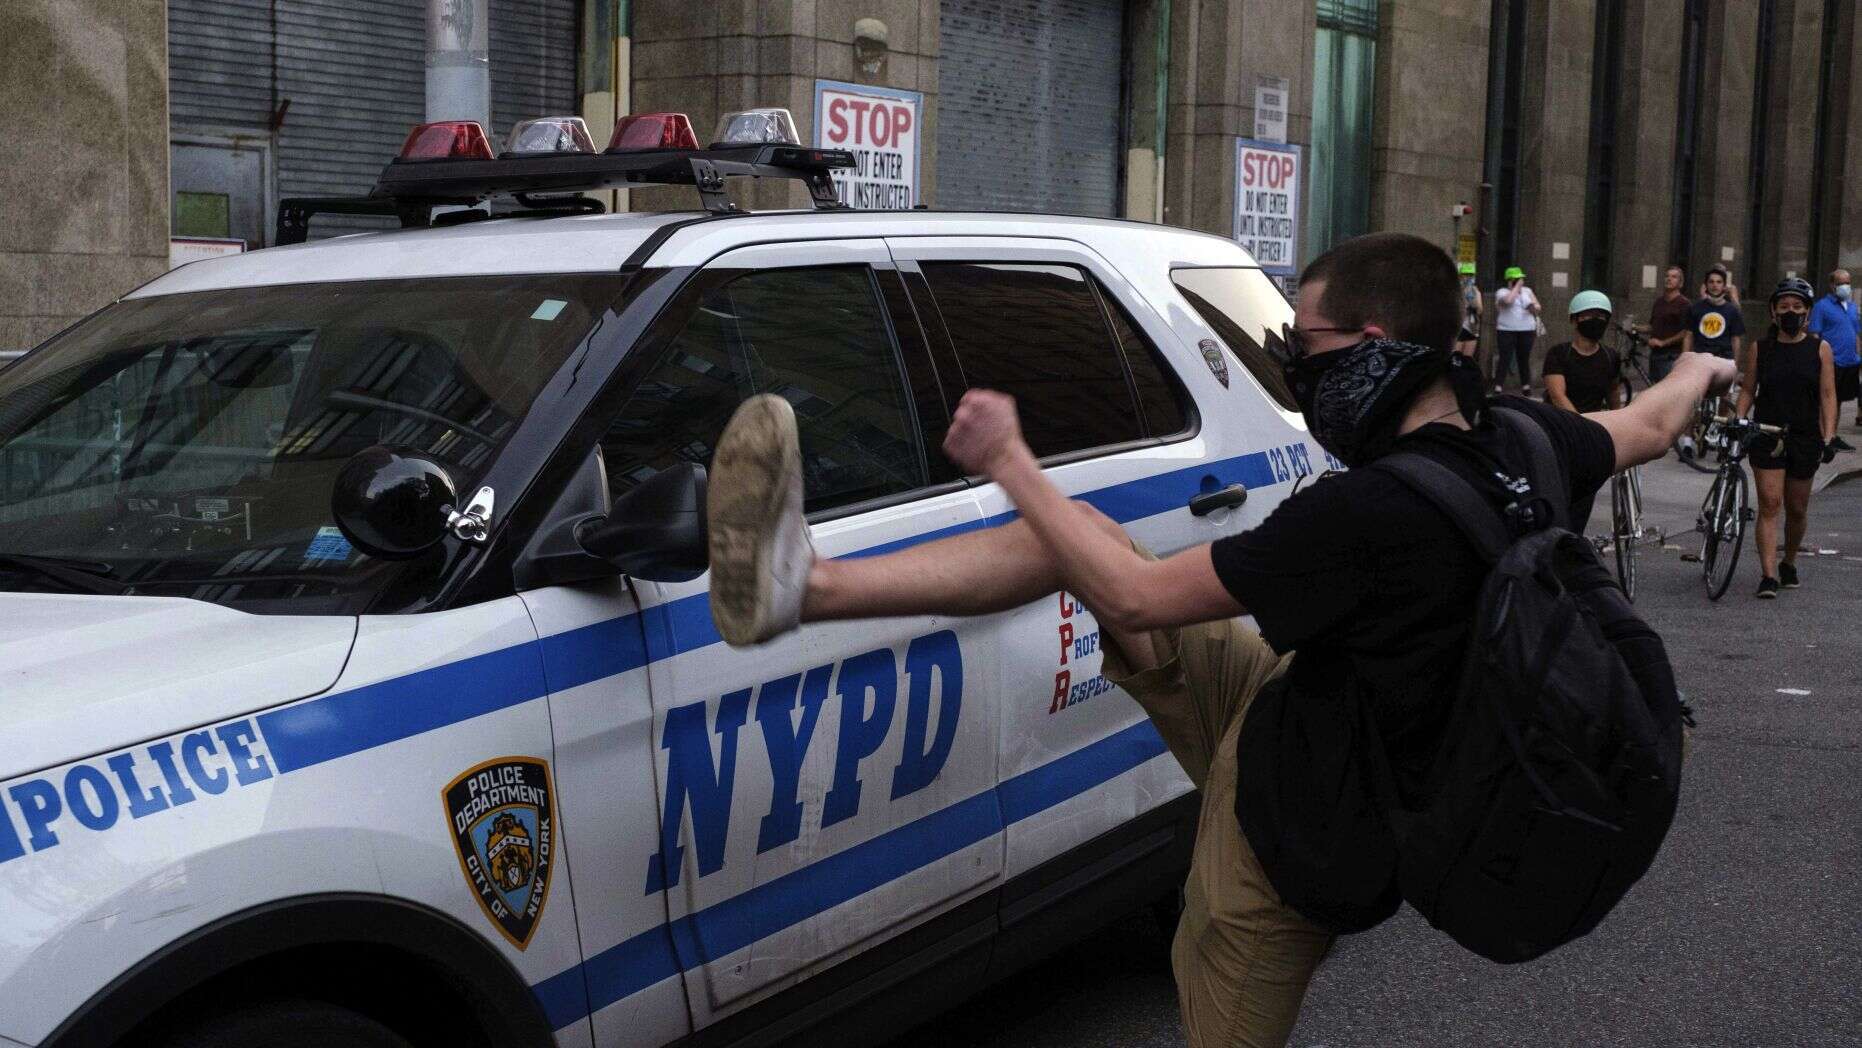 原创纽约警方:303辆警车在抗议中被破坏 损失近100万美元